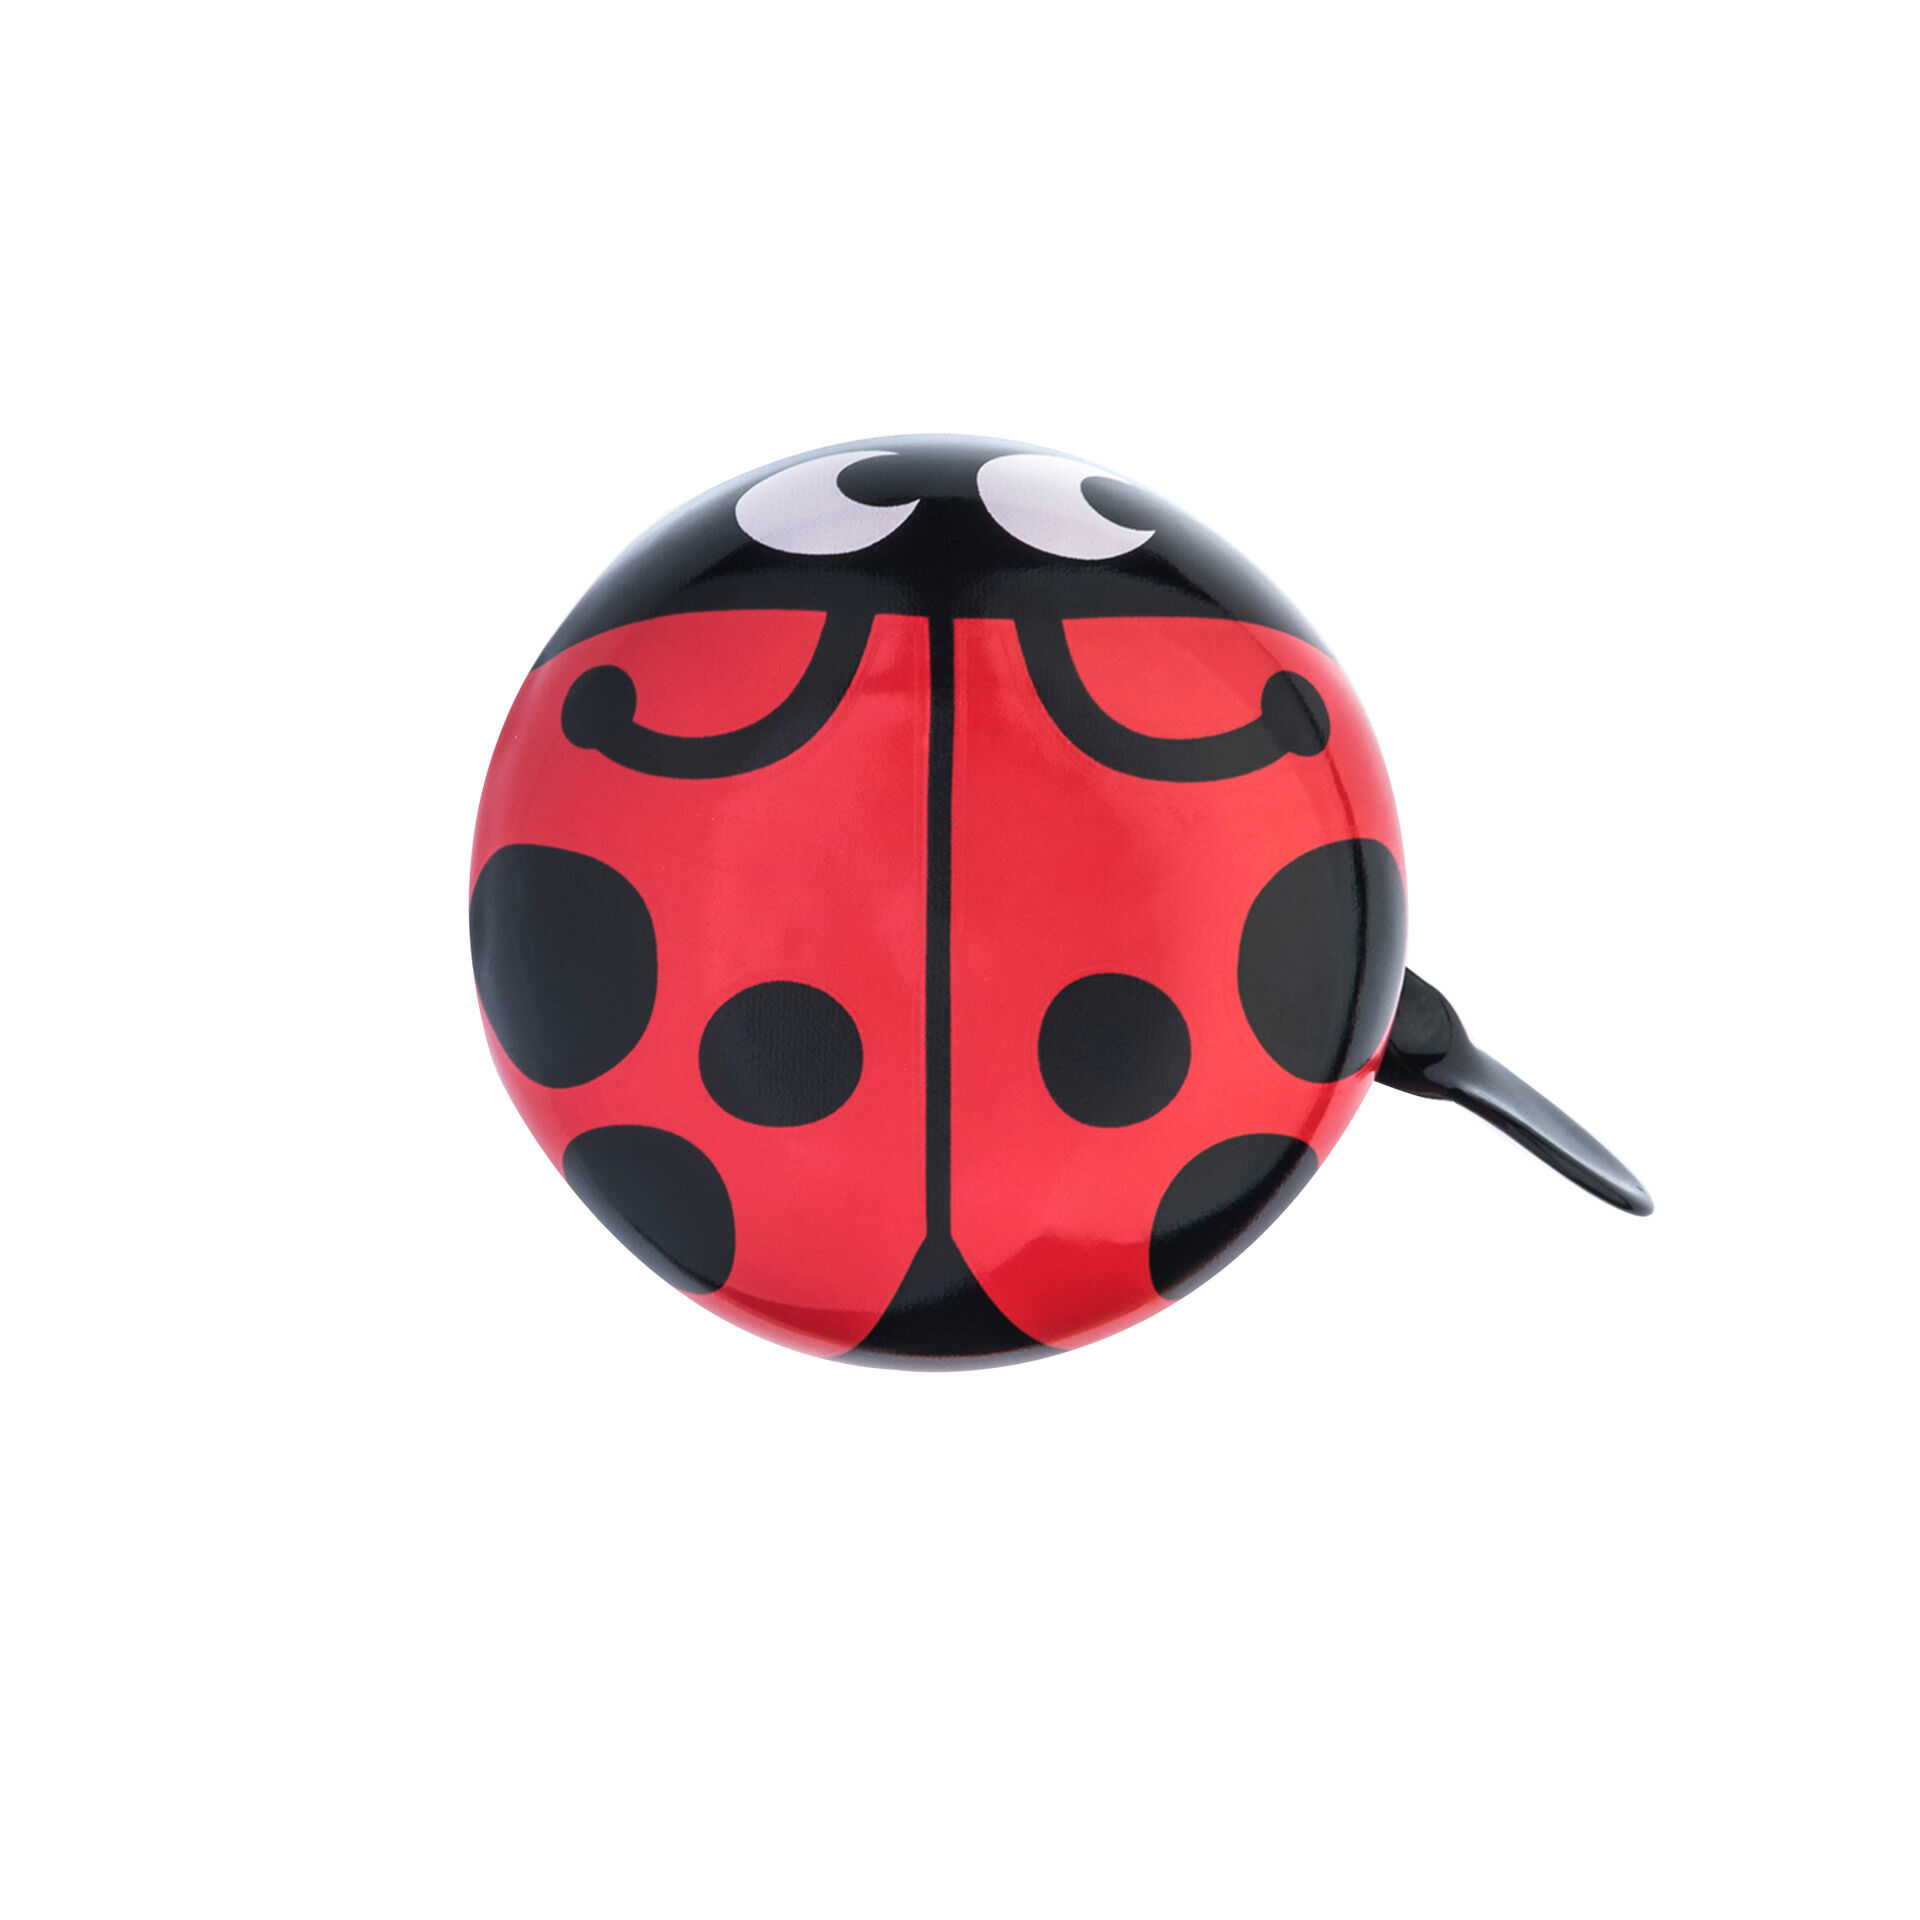 Tree-on-Life Kawaii Cute Animal Ladybug Shape Bike Campanello per Bicicletta Bello Anello per Manubrio Bici Impermeabile Campanello da Ciclismo Accessori per Biciclette Nero Rosso 